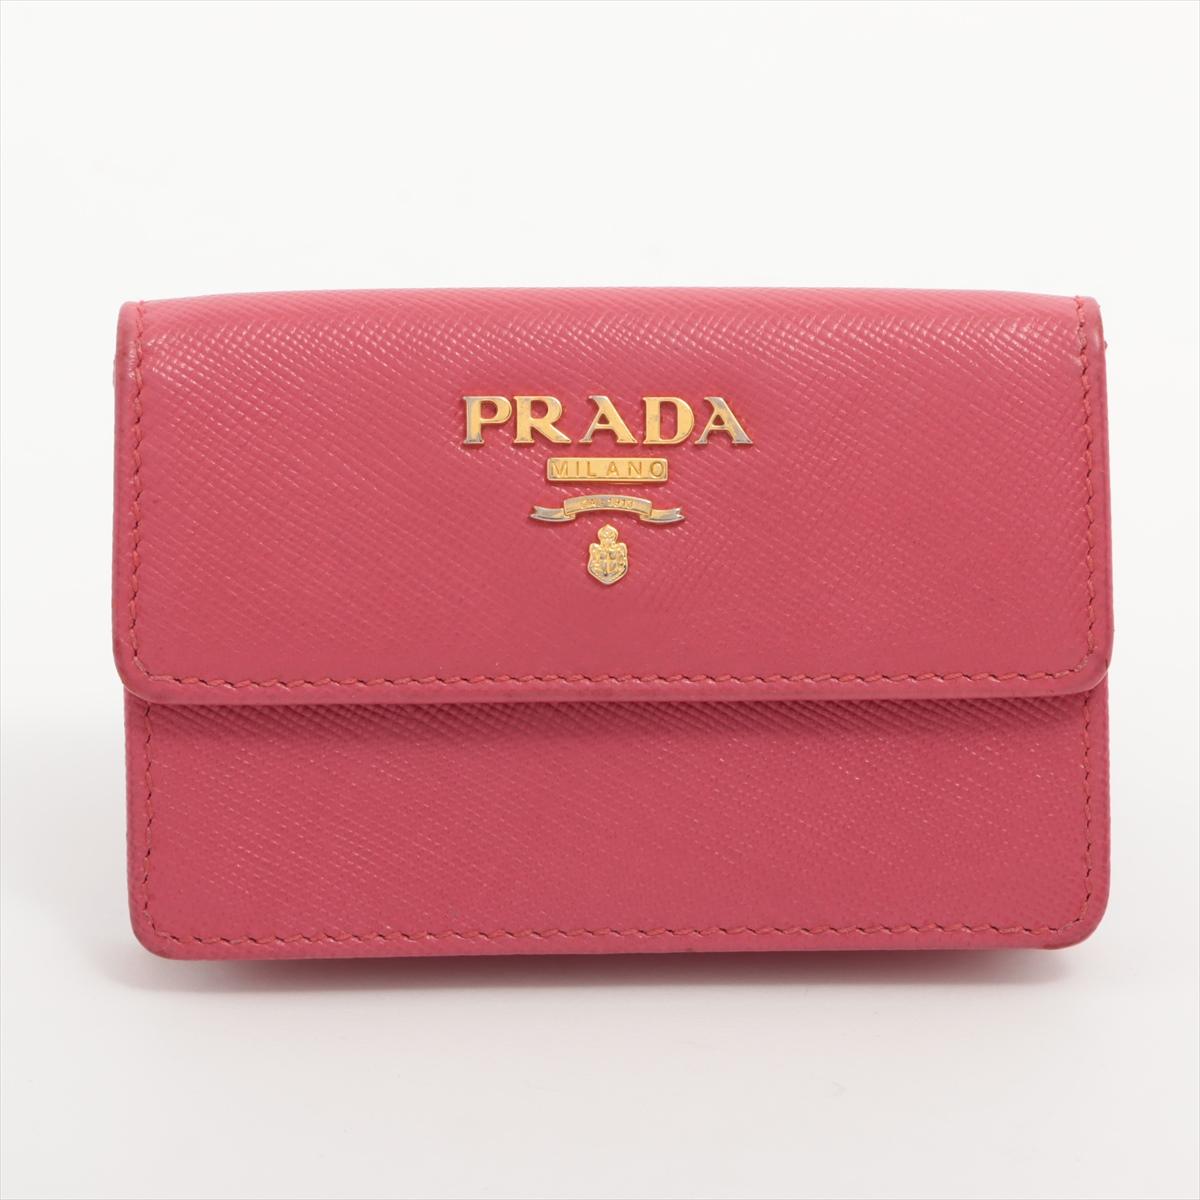 Le porte-cartes en cuir Saffiano rose de Prada est un accessoire élégant et sophistiqué, parfait pour garder vos essentiels organisés avec style. Fabriqué en cuir Saffiano luxueux, connu pour sa durabilité et sa texture hachurée distinctive, l'étui